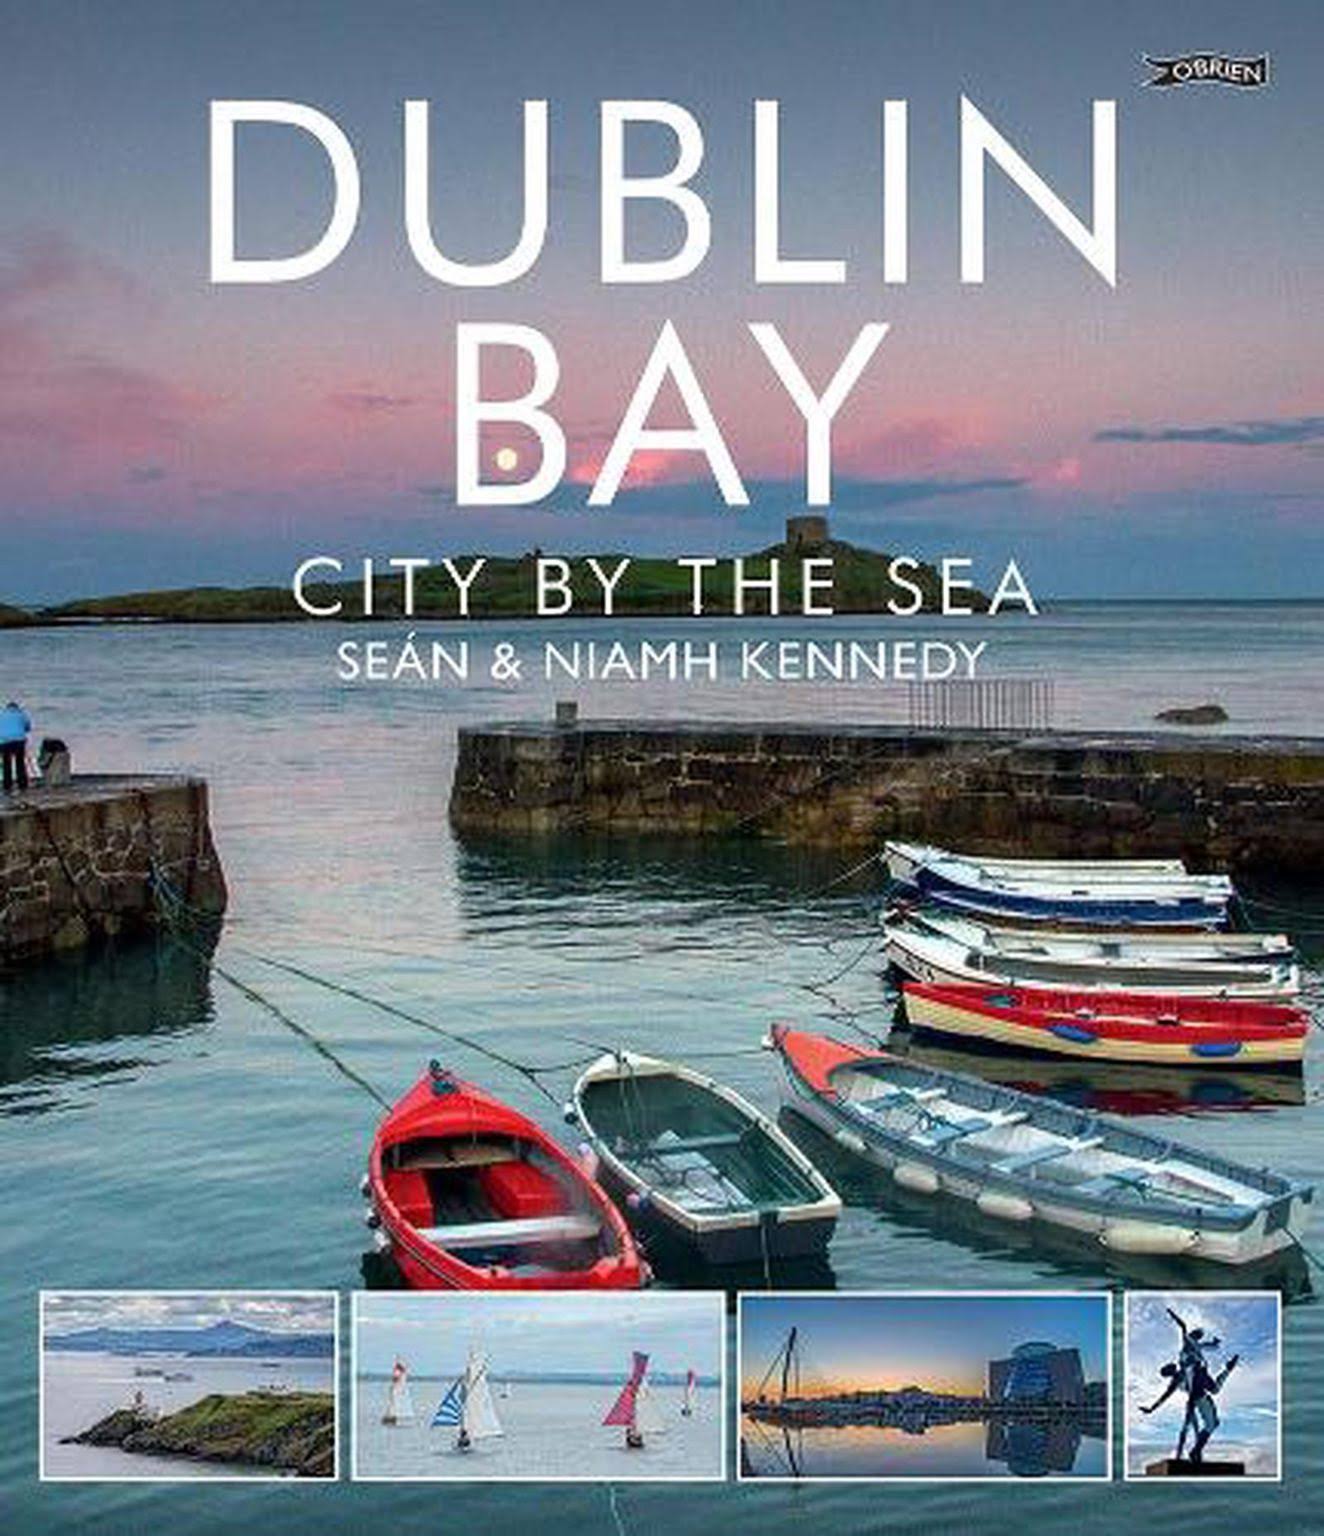 Dublin Bay City by the Sea